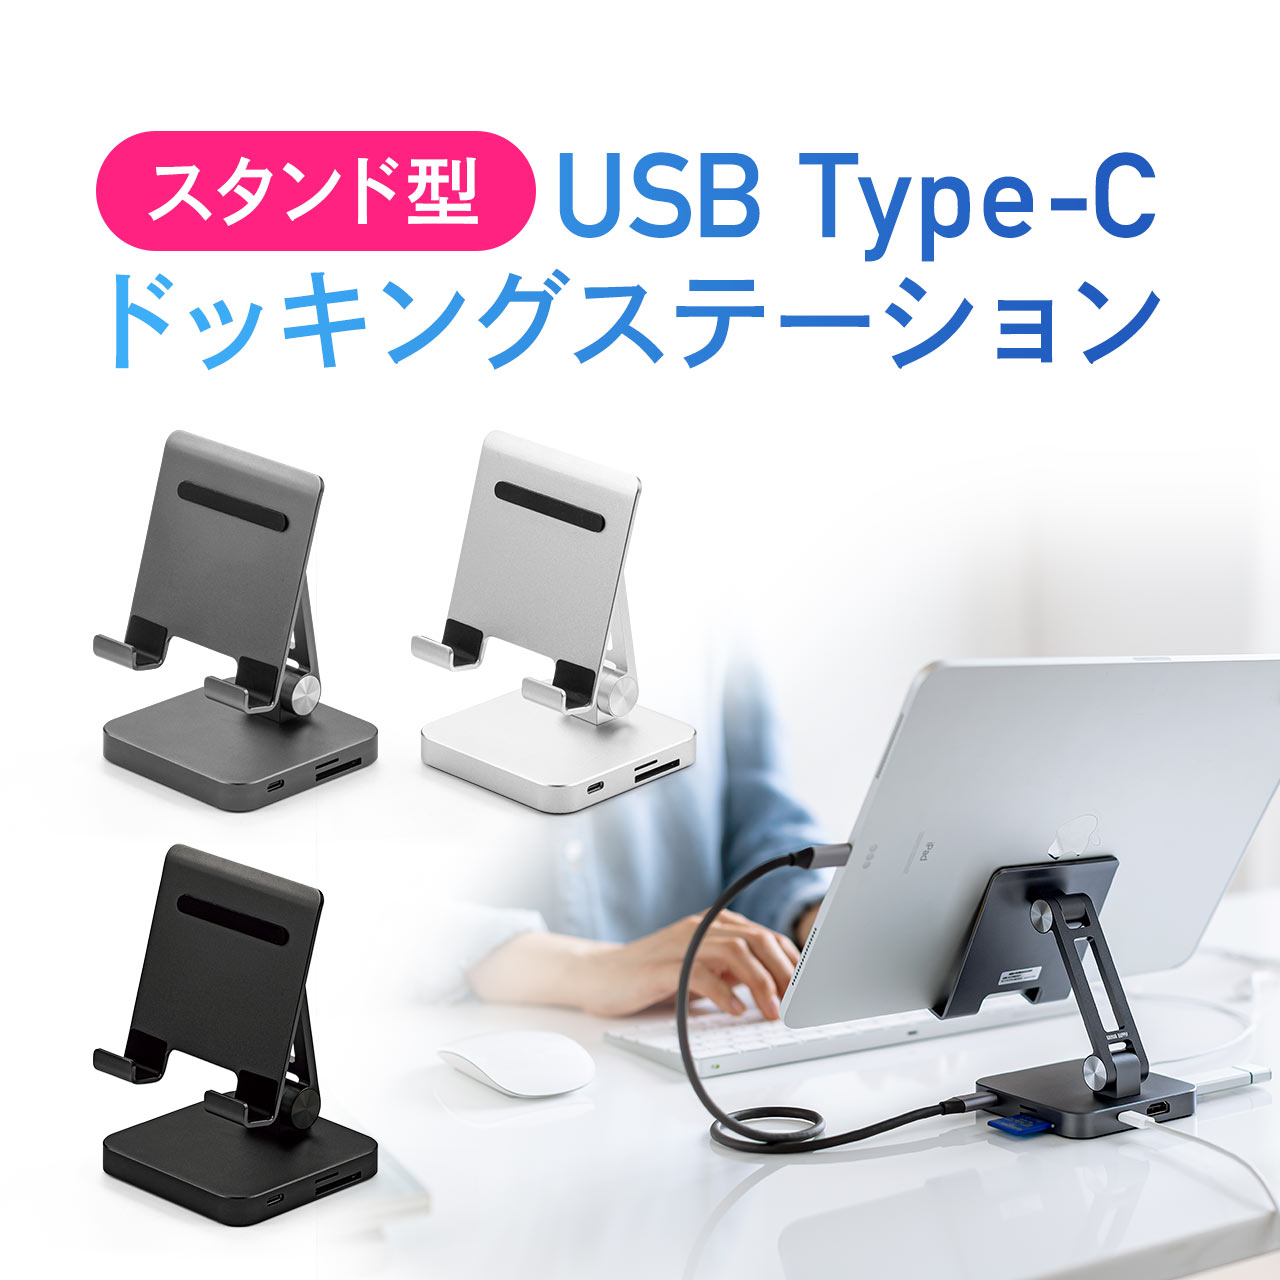 USB ハブ Type-C 変換アダプタ スタンド一体型 ドッキングステーション